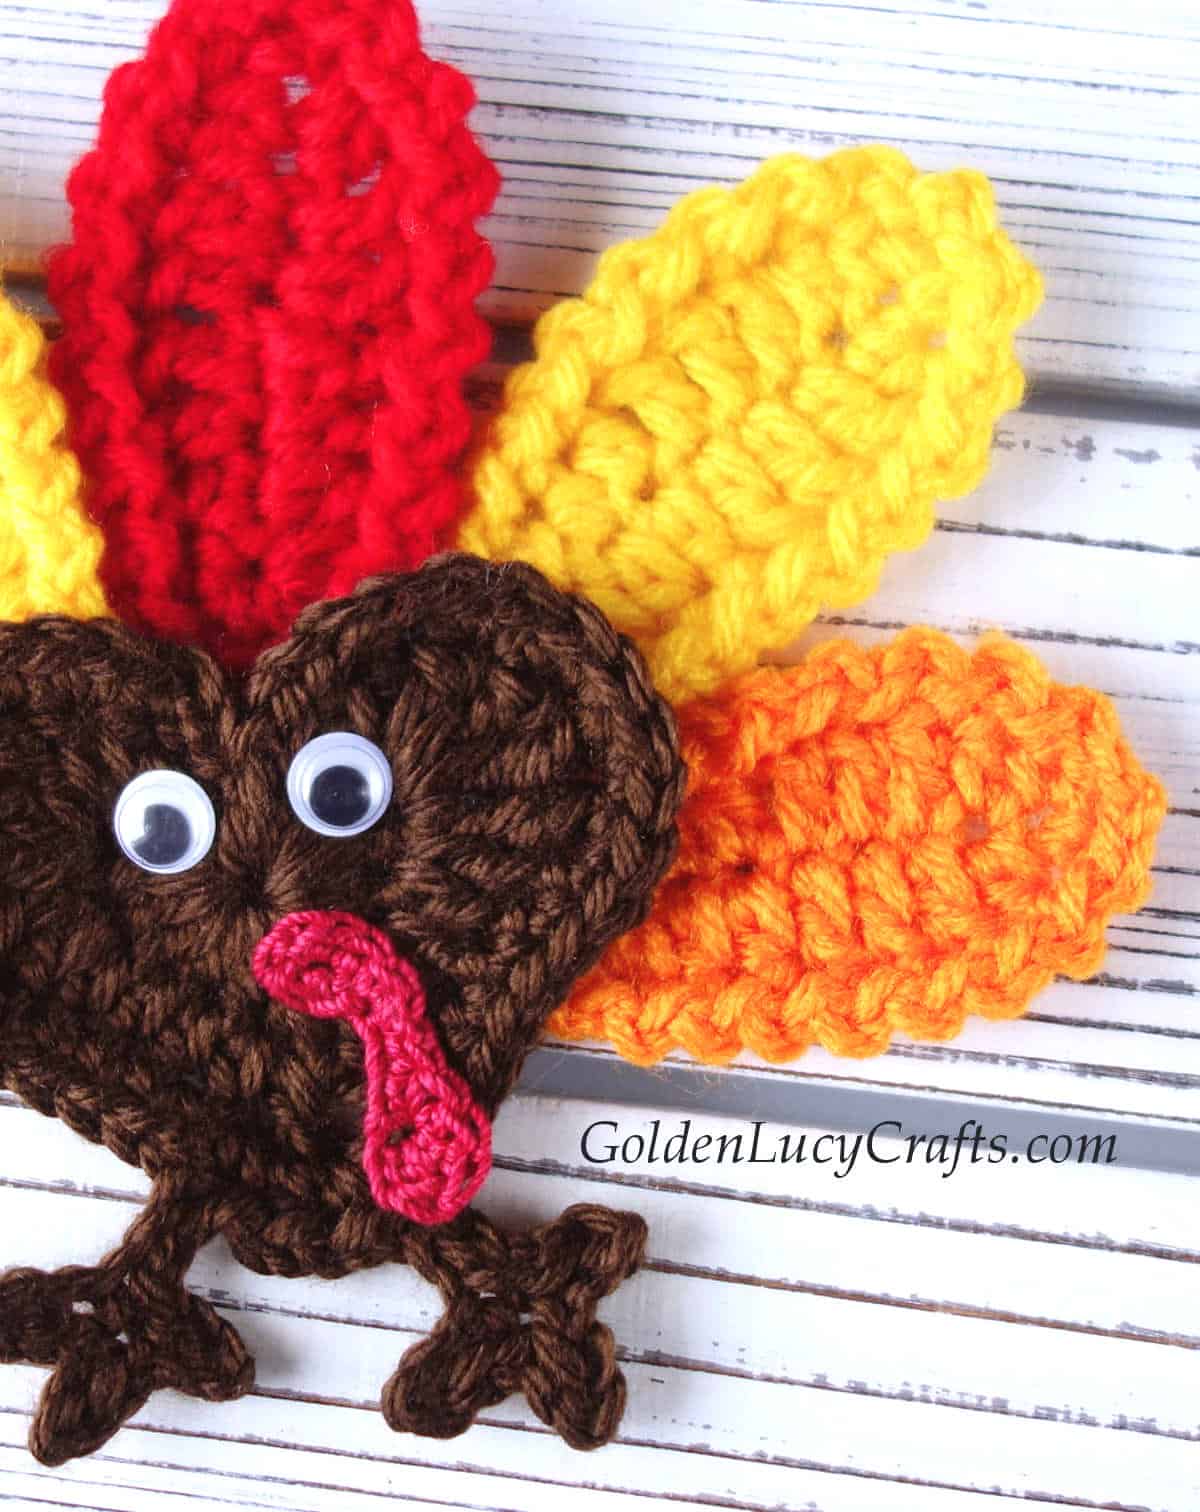 Crochet turkey applique close up picture.